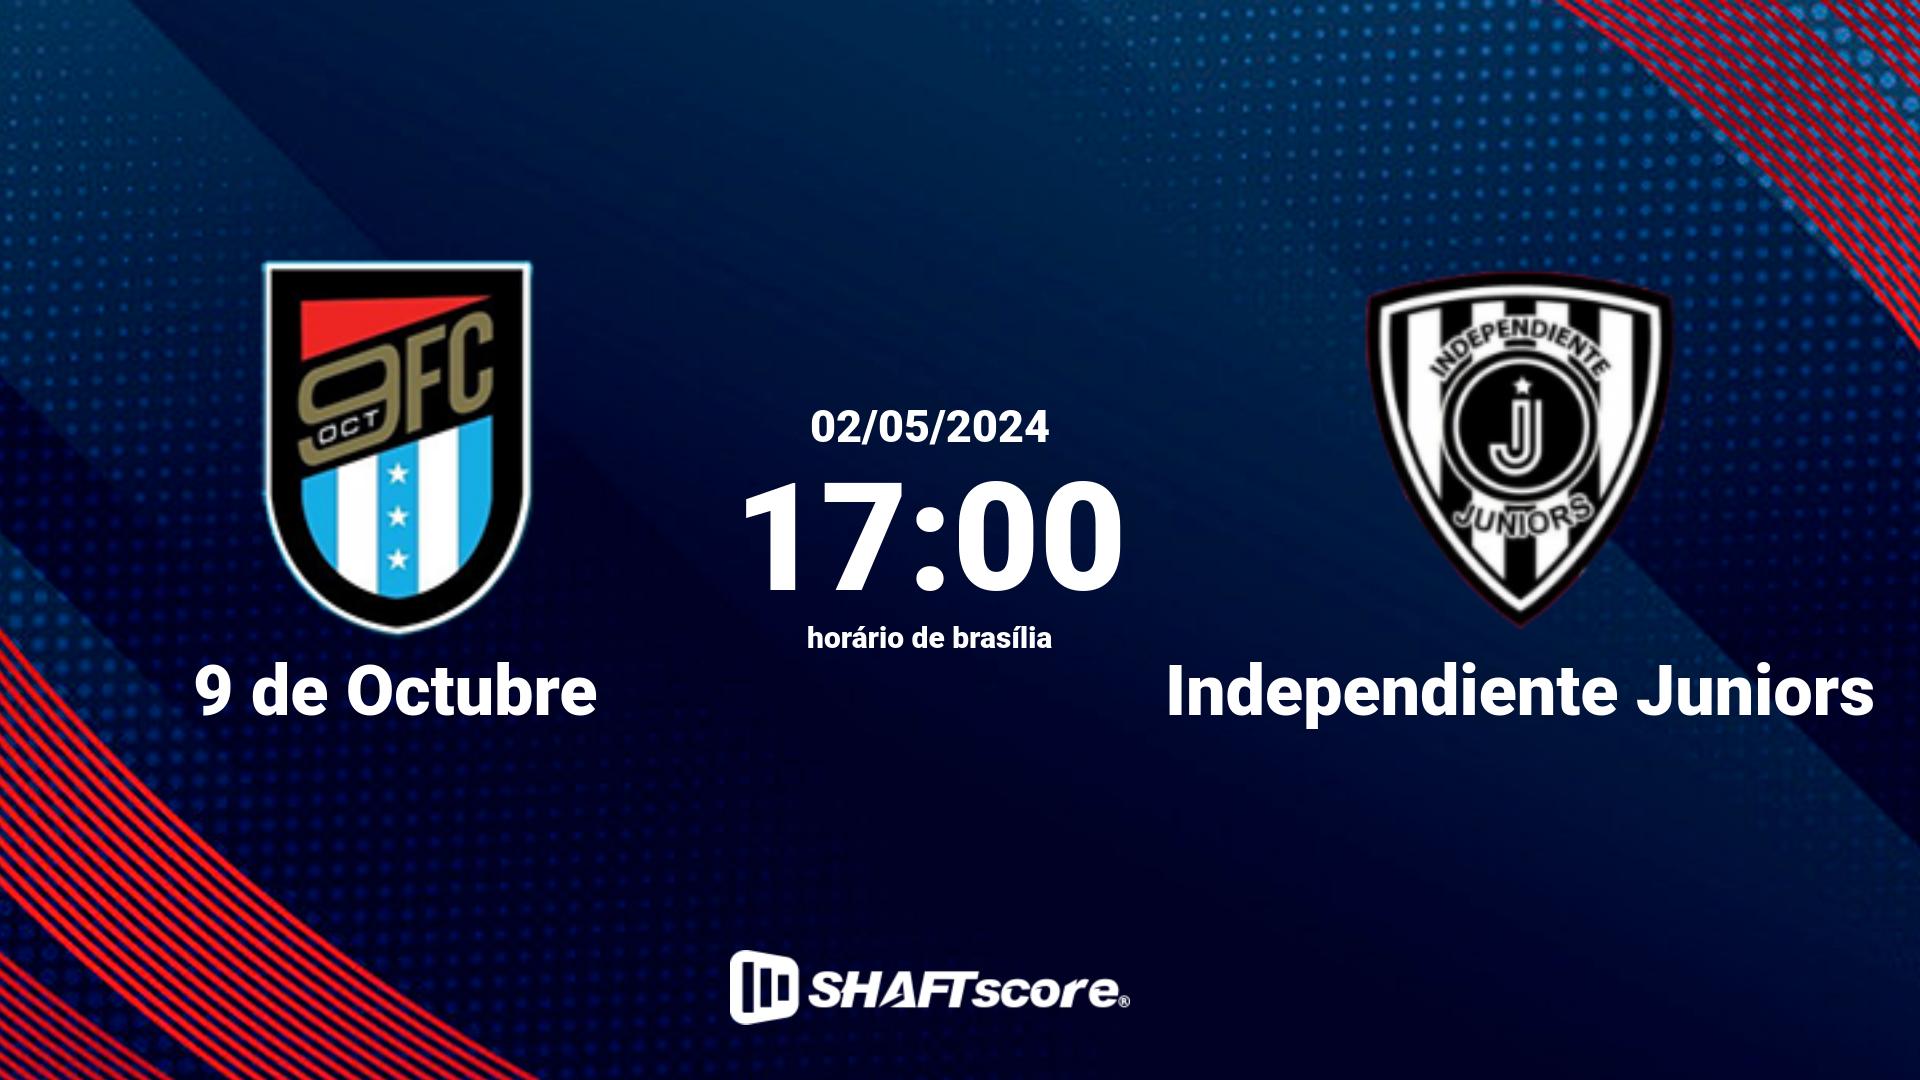 Estatísticas do jogo 9 de Octubre vs Independiente Juniors 02.05 17:00